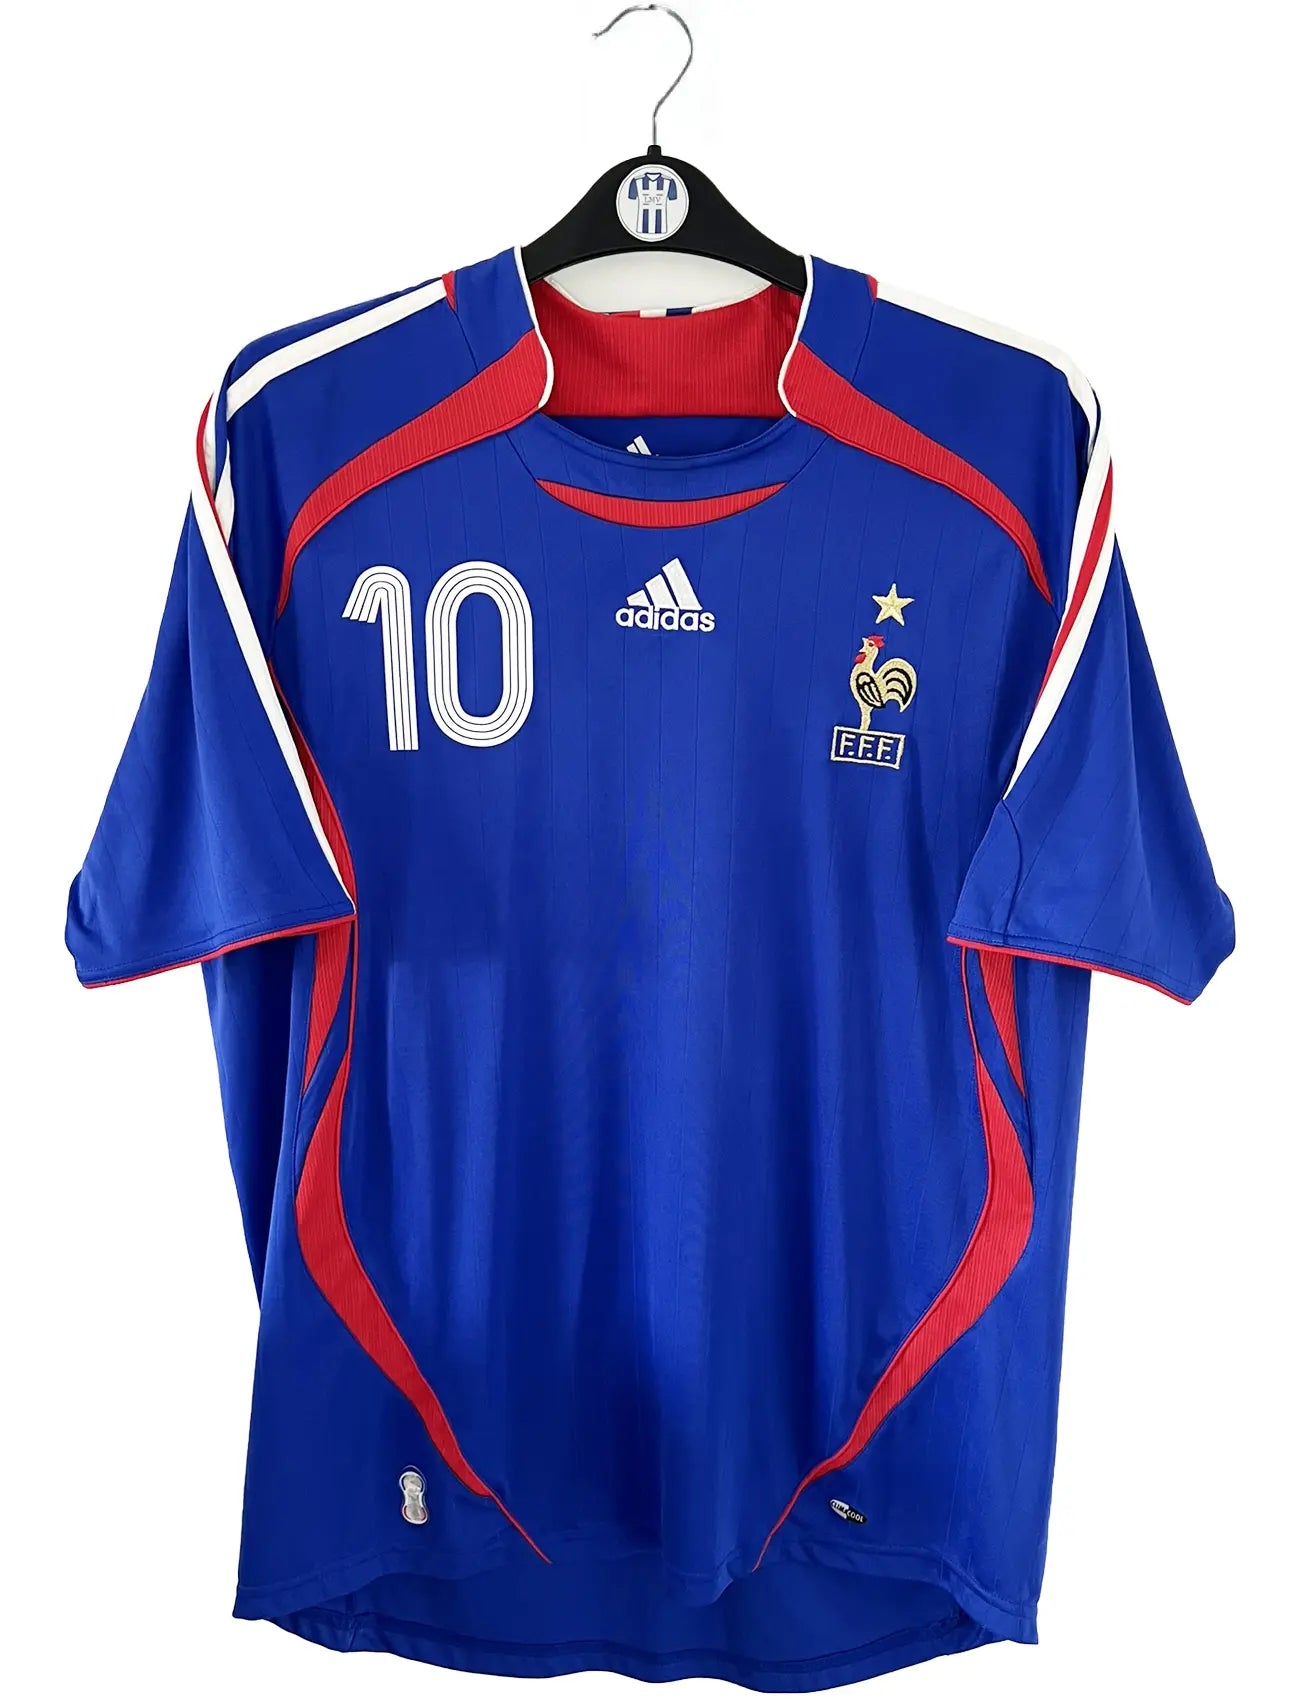 Maillot de foot vintage domicile bleu, blanc et rouge de l'équipe de france 2006. On peut retrouver l'équipementier adidas. Le maillot est floqué du numéro 10 Zinedine Zidane. Il s'agit d'un maillot authentique d'époque comportant l'étiquette 740126. Le maillot est un taille XL